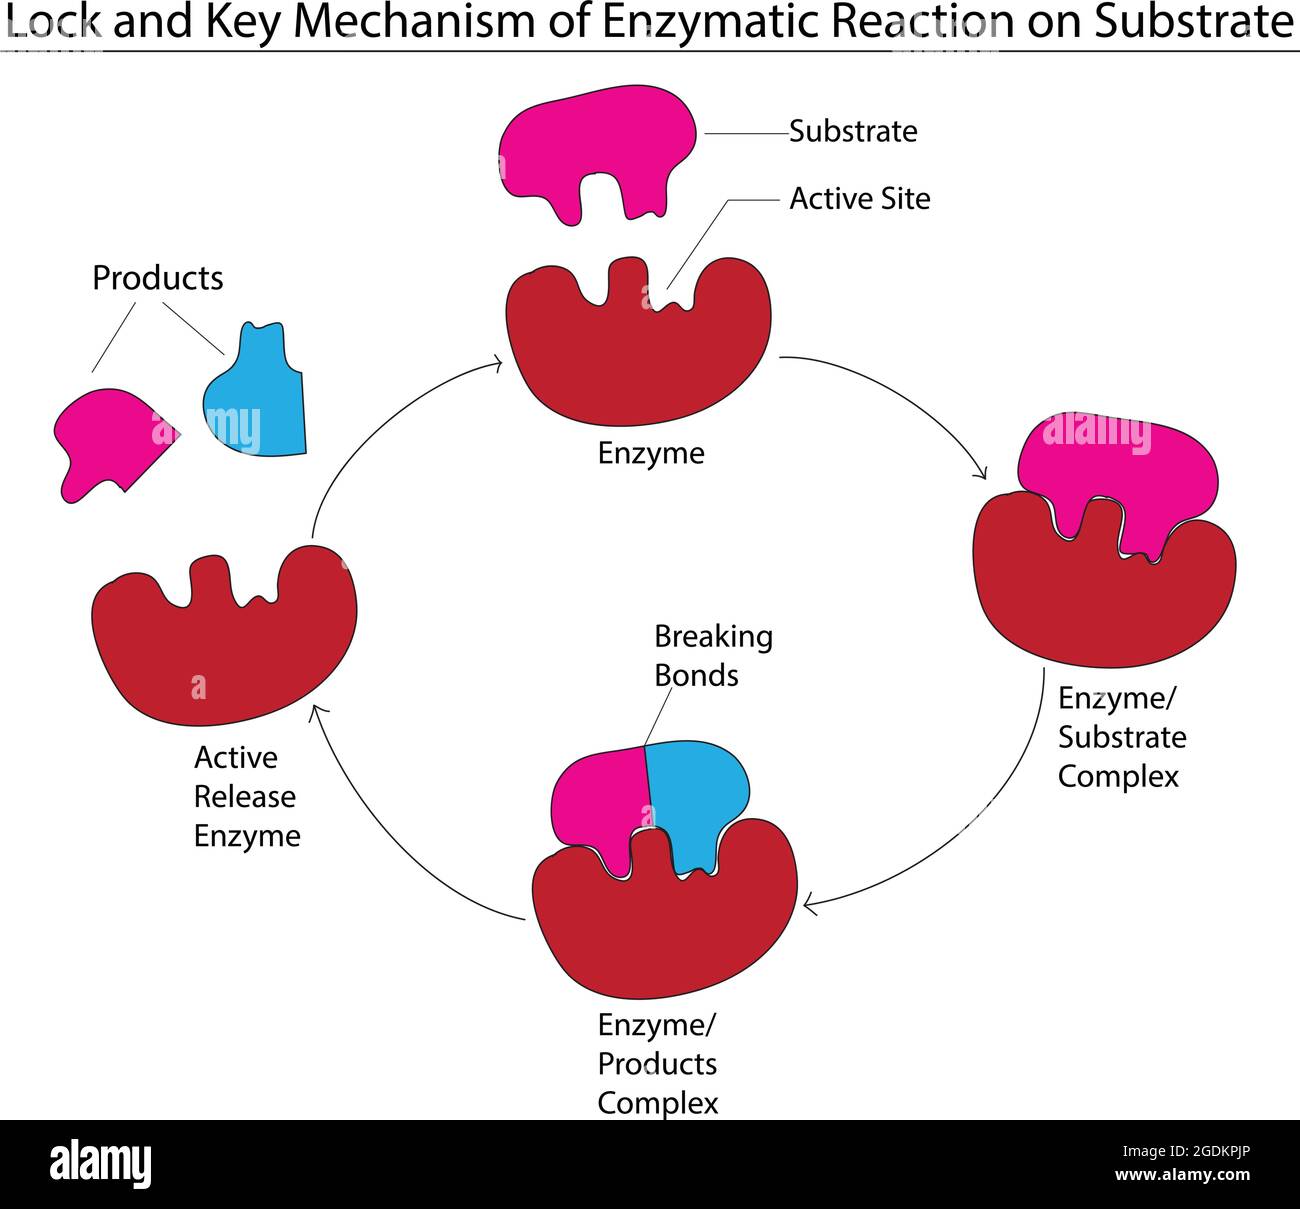 Schloss- und Schlüsselmodell des Enzyms, Biologisches Modell des Schlosses und Schlüsselmechanismus, Schritte der Enzym- und Substratreaktion, Reaktionsmodell des Enzyms, enzymatisch Stock Vektor